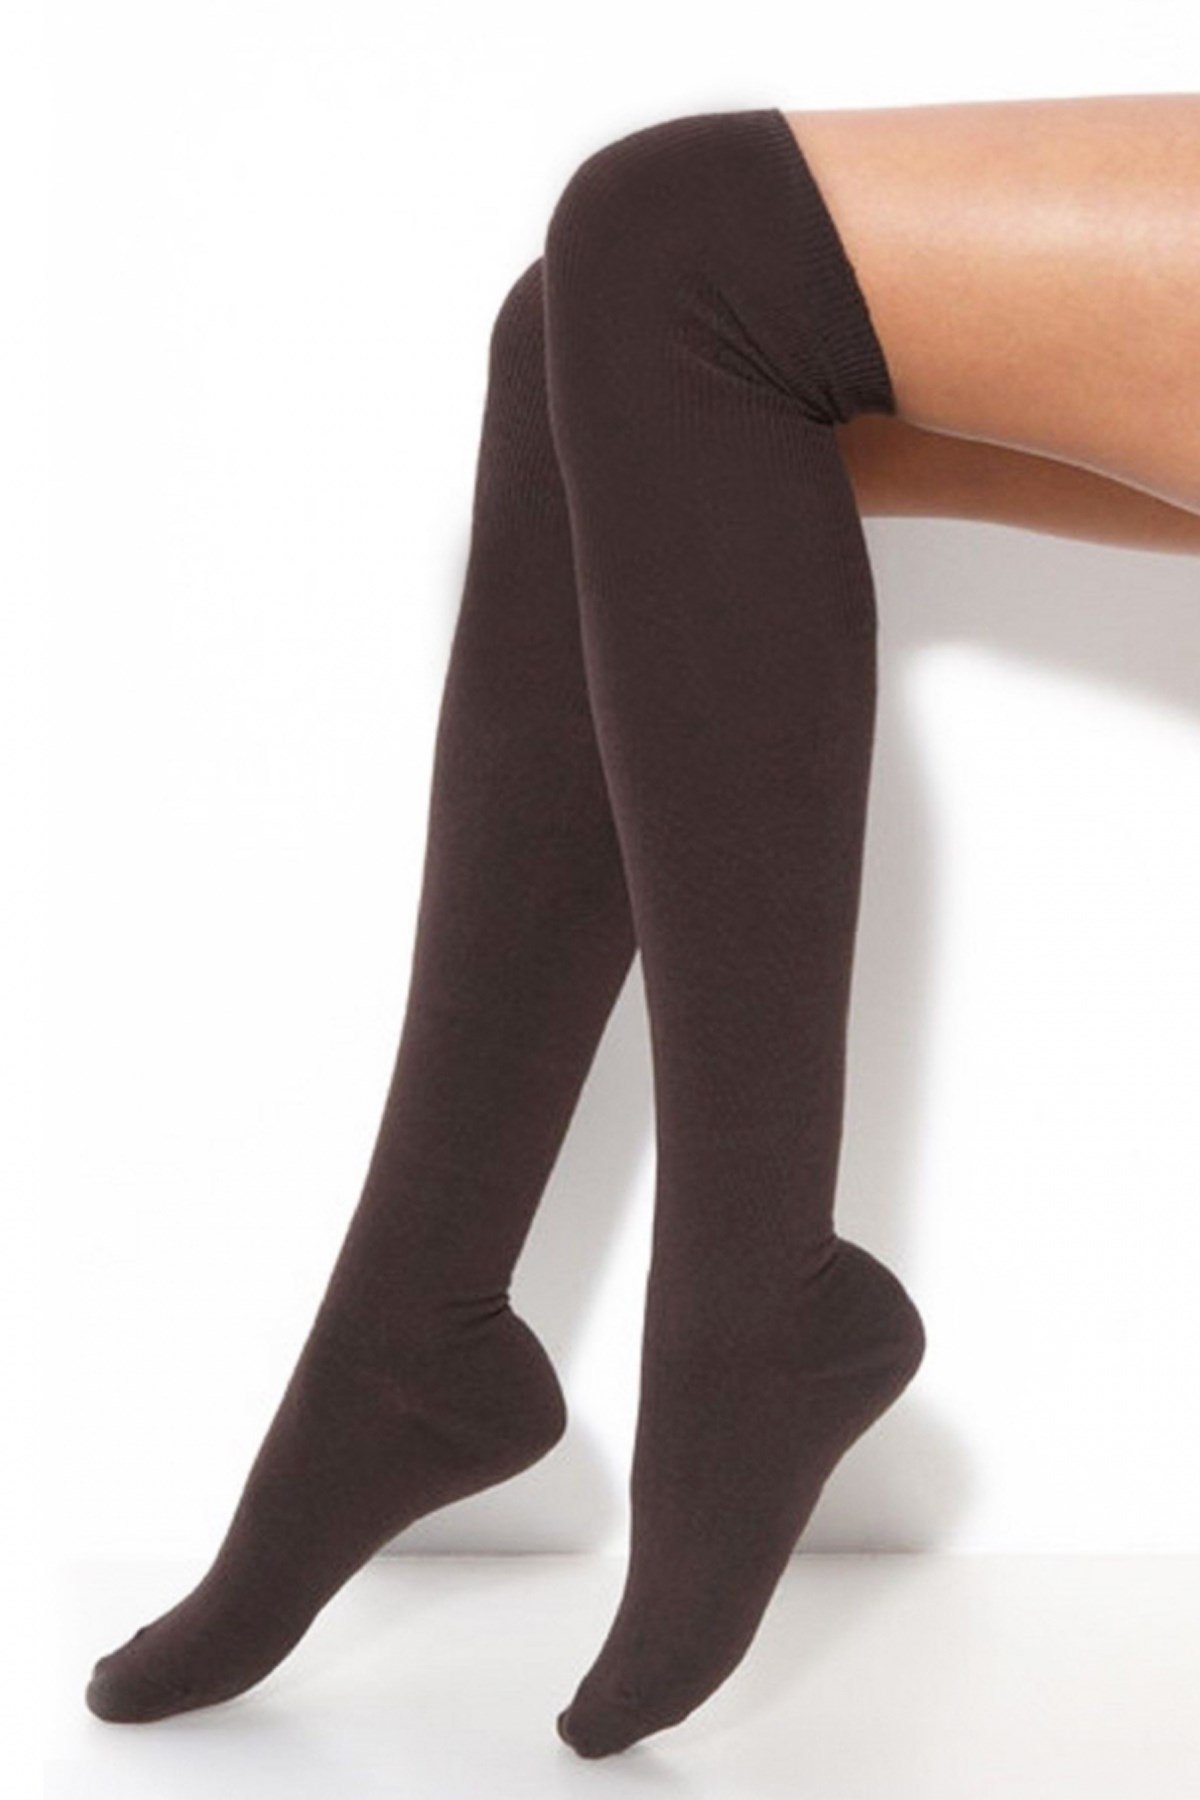 İtaliana Kadın Düz Koton Diz Üstü Çorap 1606 Yeni Sezon! Moda! Ürünler  Rakipsiz Fiyatlar İç Giyim, Ev Tekstili, Kozmetik, Çeyiz ve Daha Fazlası |  yoncatoptan.com